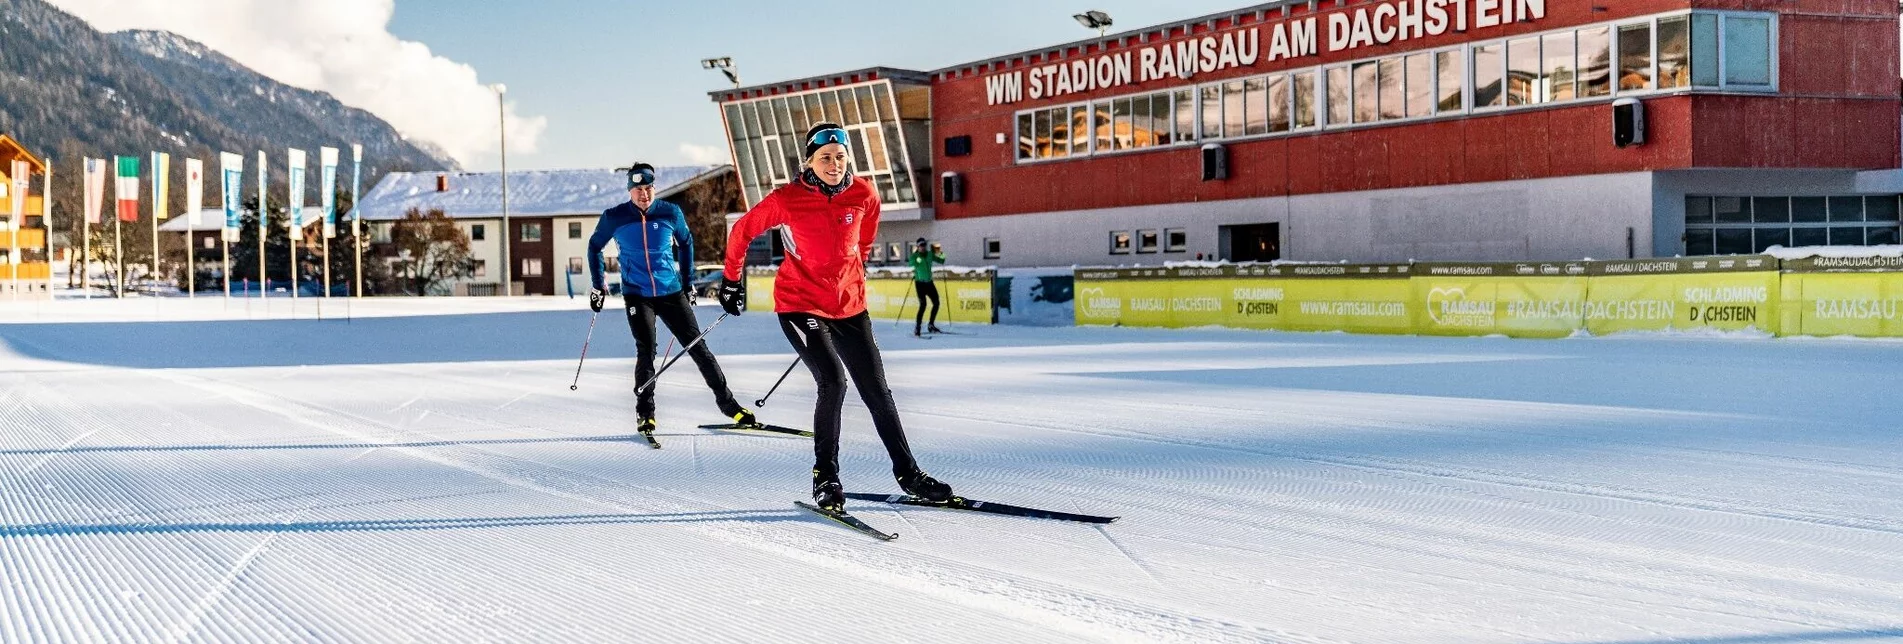 Ski nordic skating Stadium XC Trail - Touren-Impression #1 | © Erlebnisregion Schladming-Dachstein